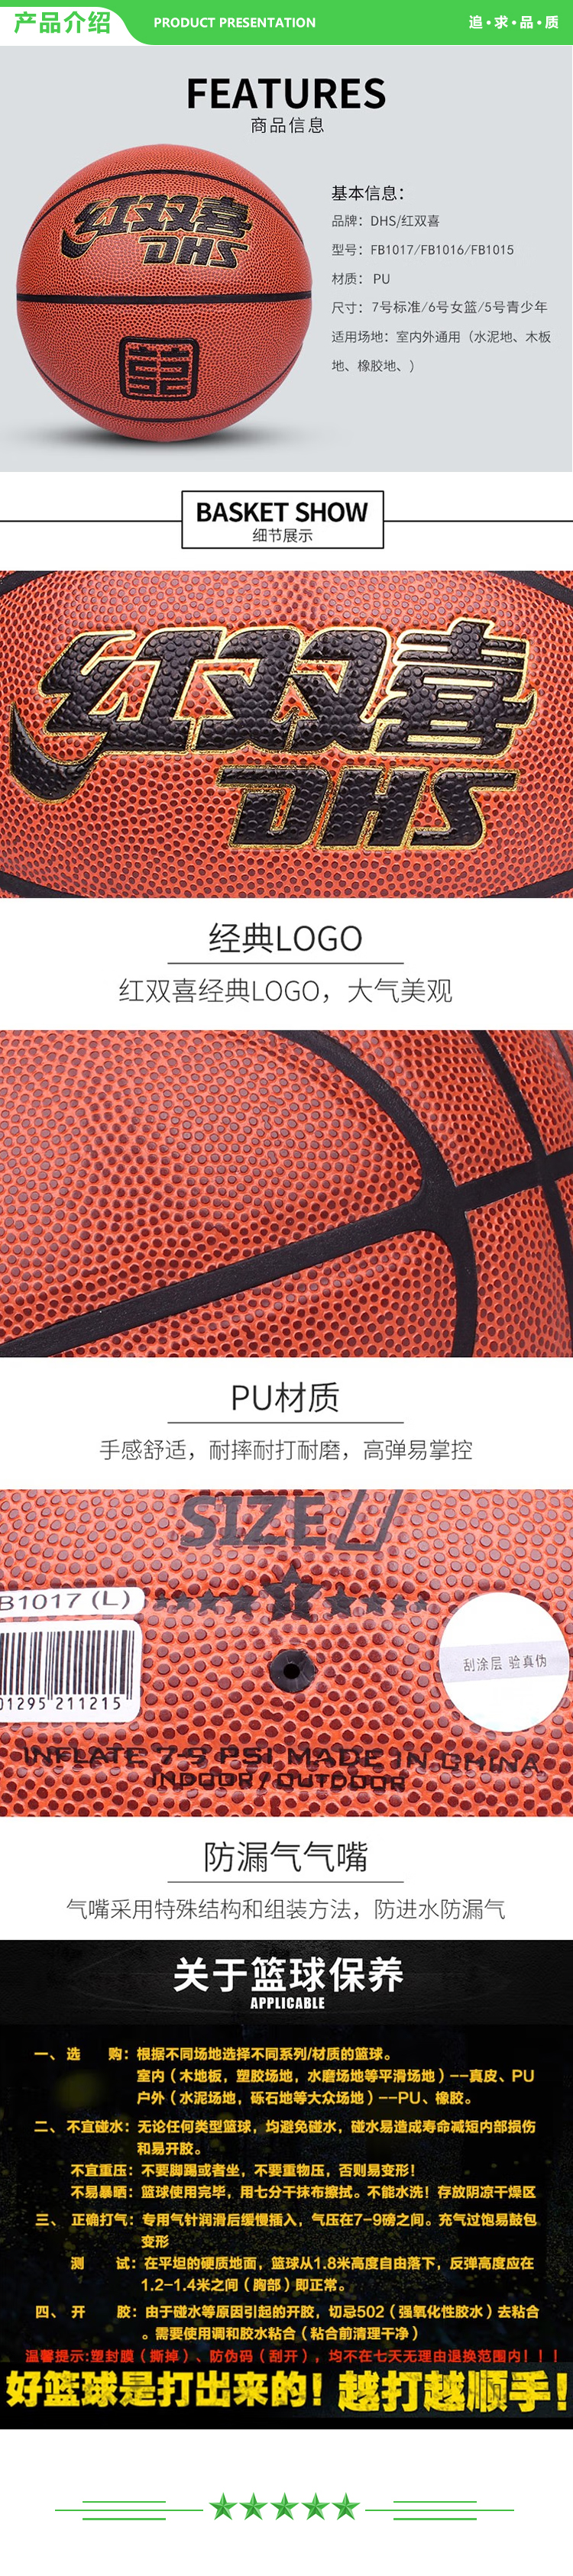 红双喜 DHS FB1017 七号篮球 一星级篮球室内外通用棕色PU球 一星级PU篮球 .jpg